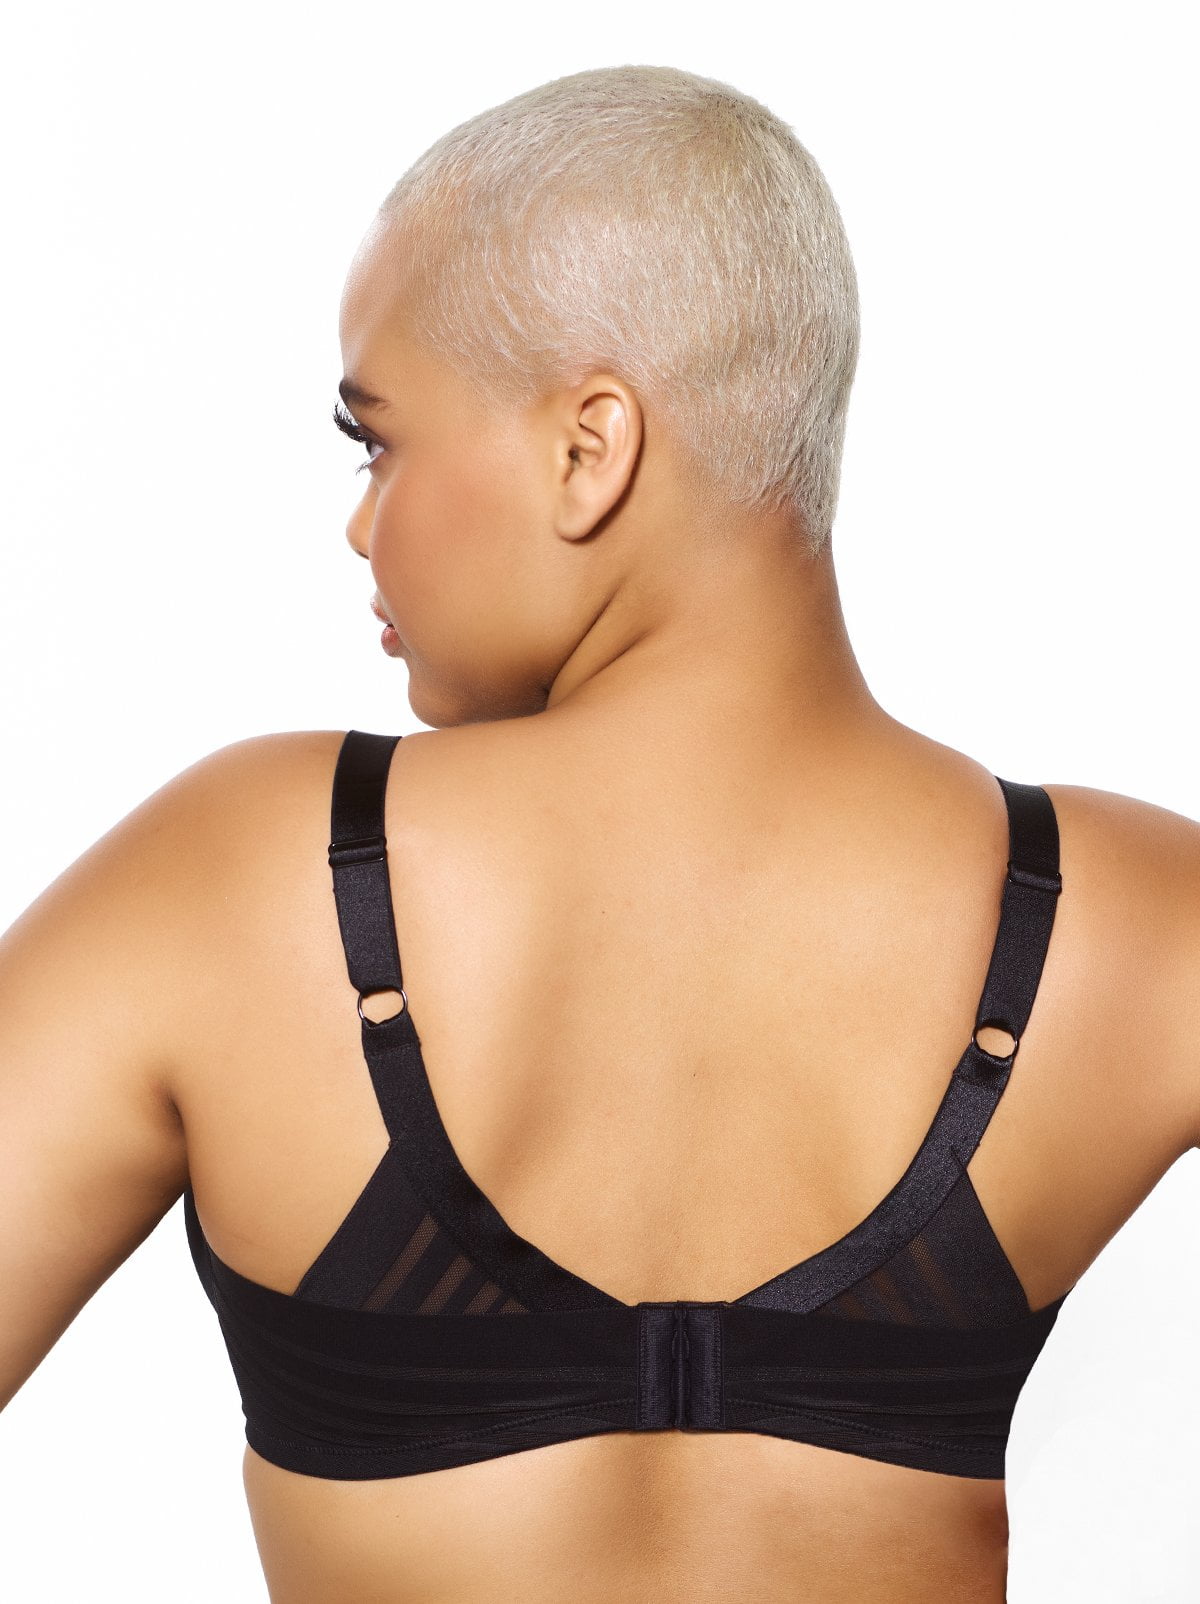 sell] [us] asymmetrical bras size 4,4,6 $28 shipped each Venmo